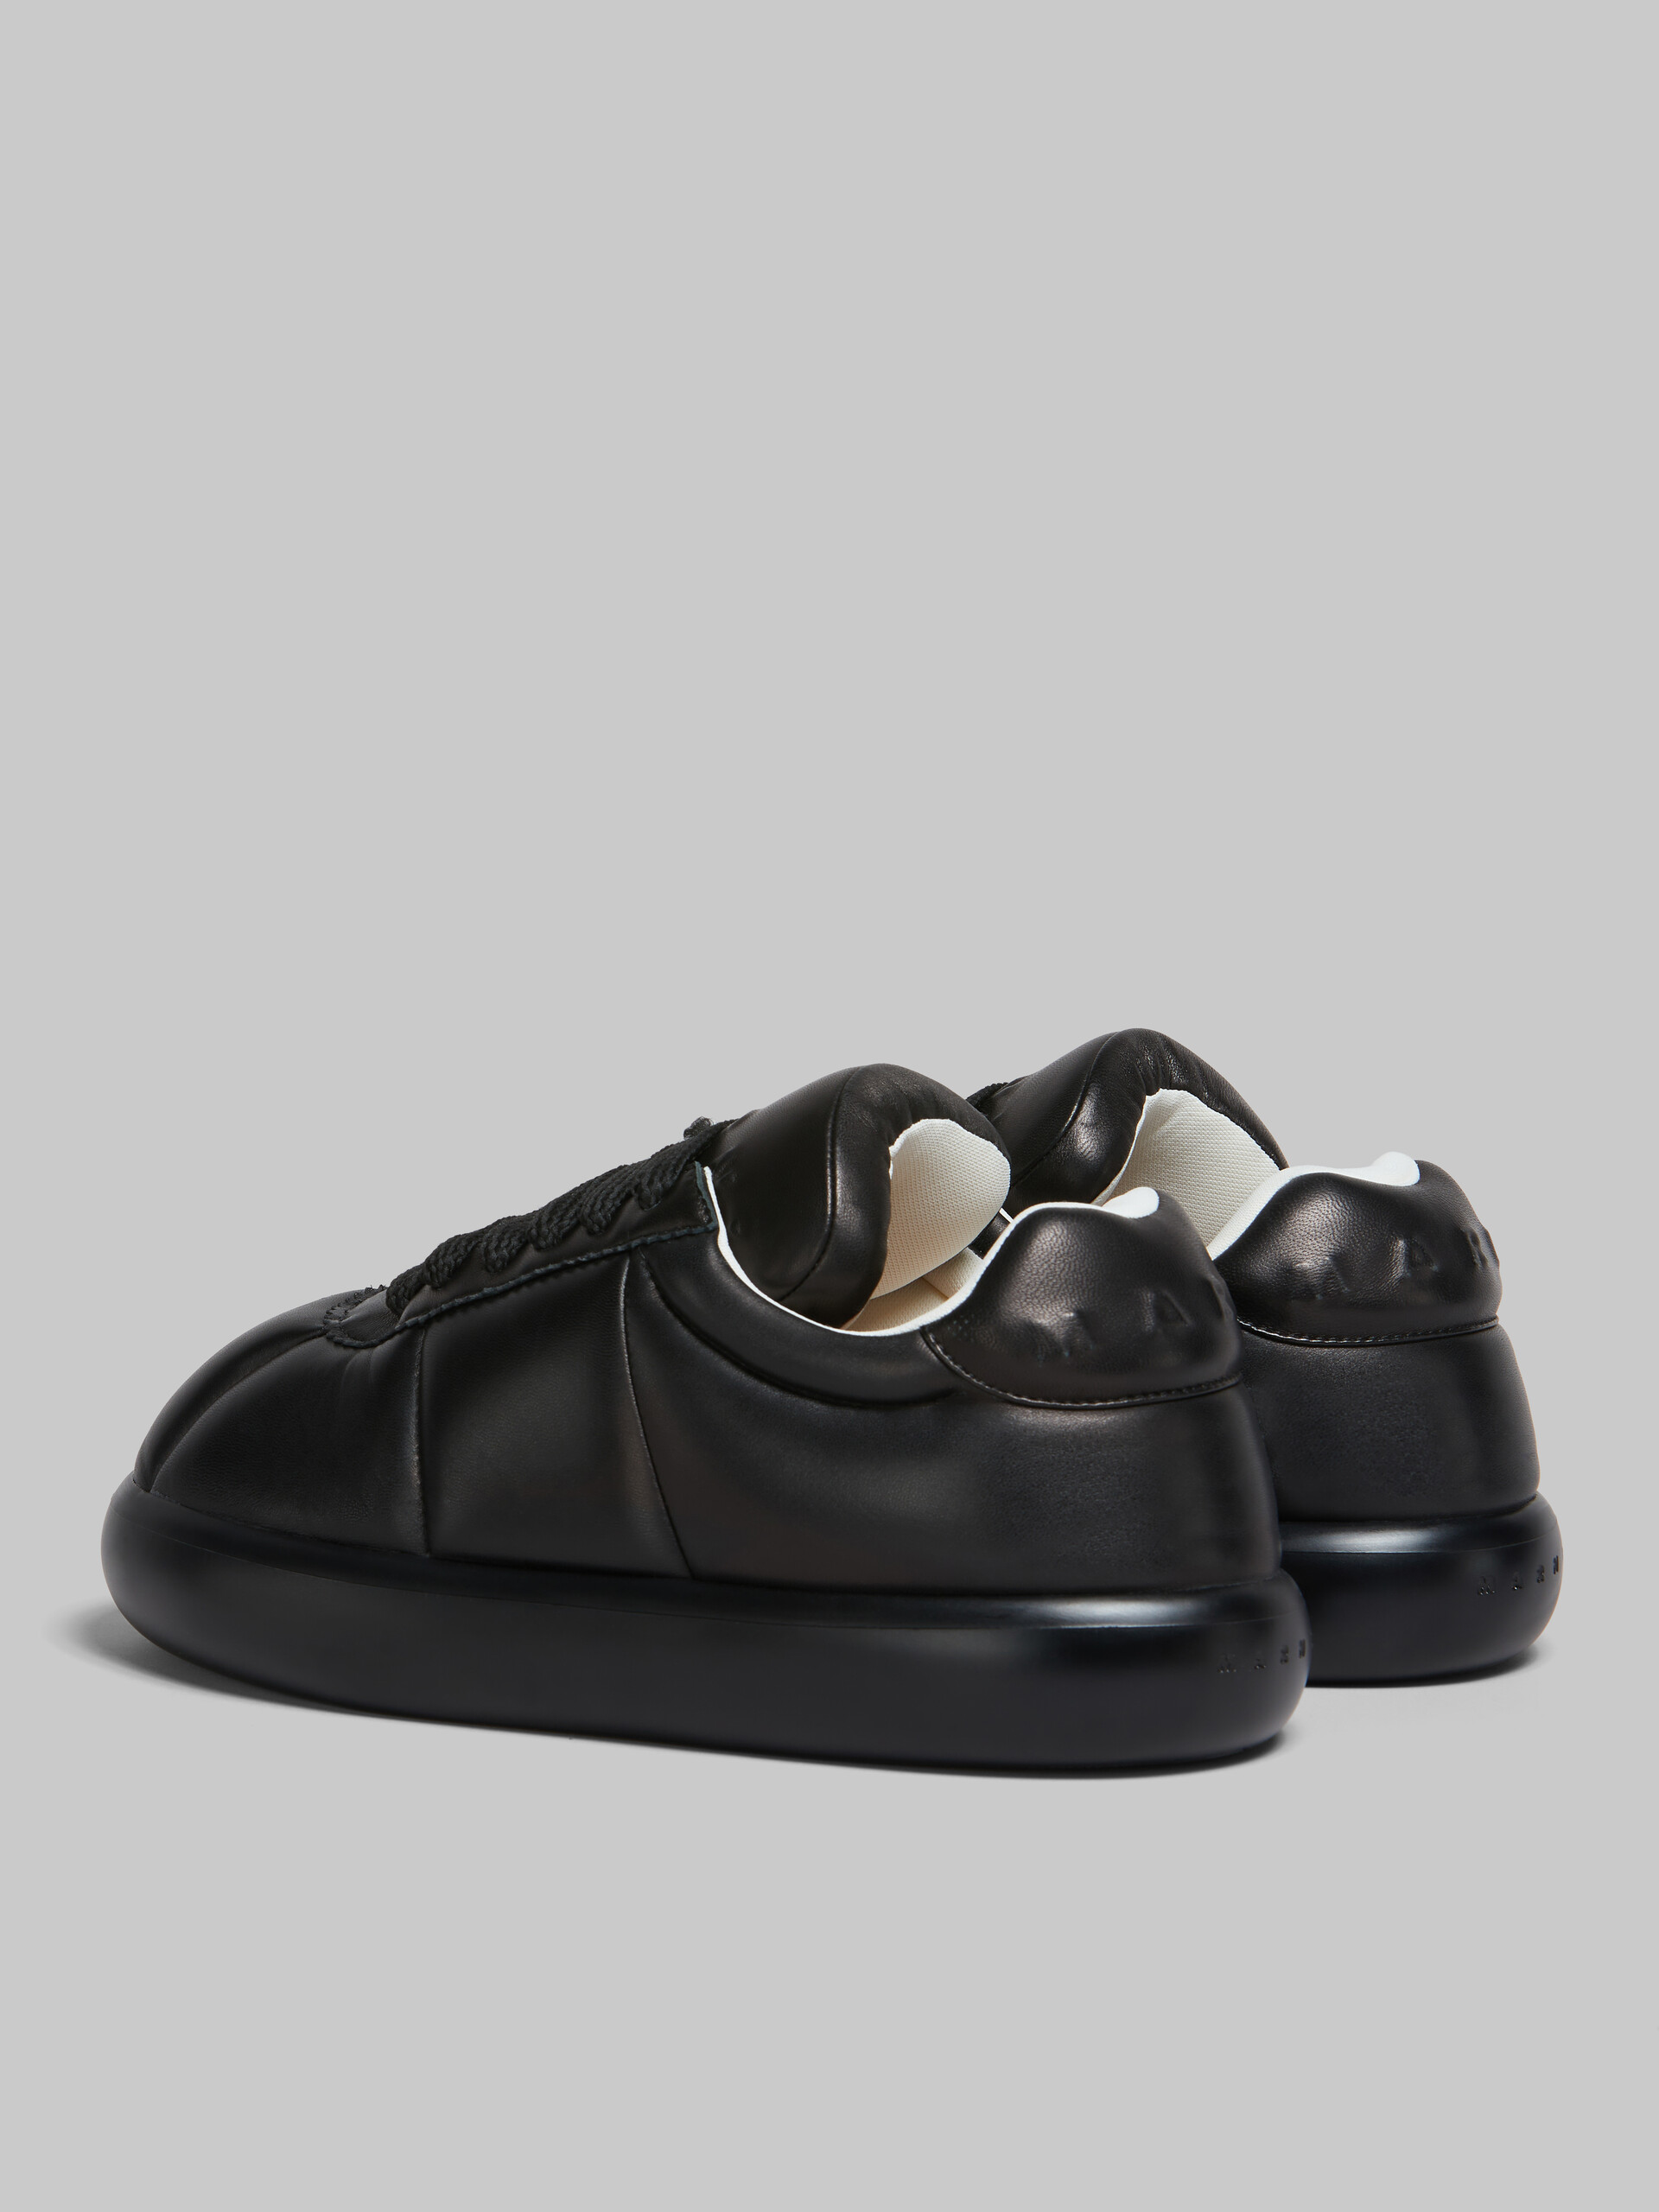 Sneakers BigFoot 2.0 en cuir noir - Sneakers - Image 3